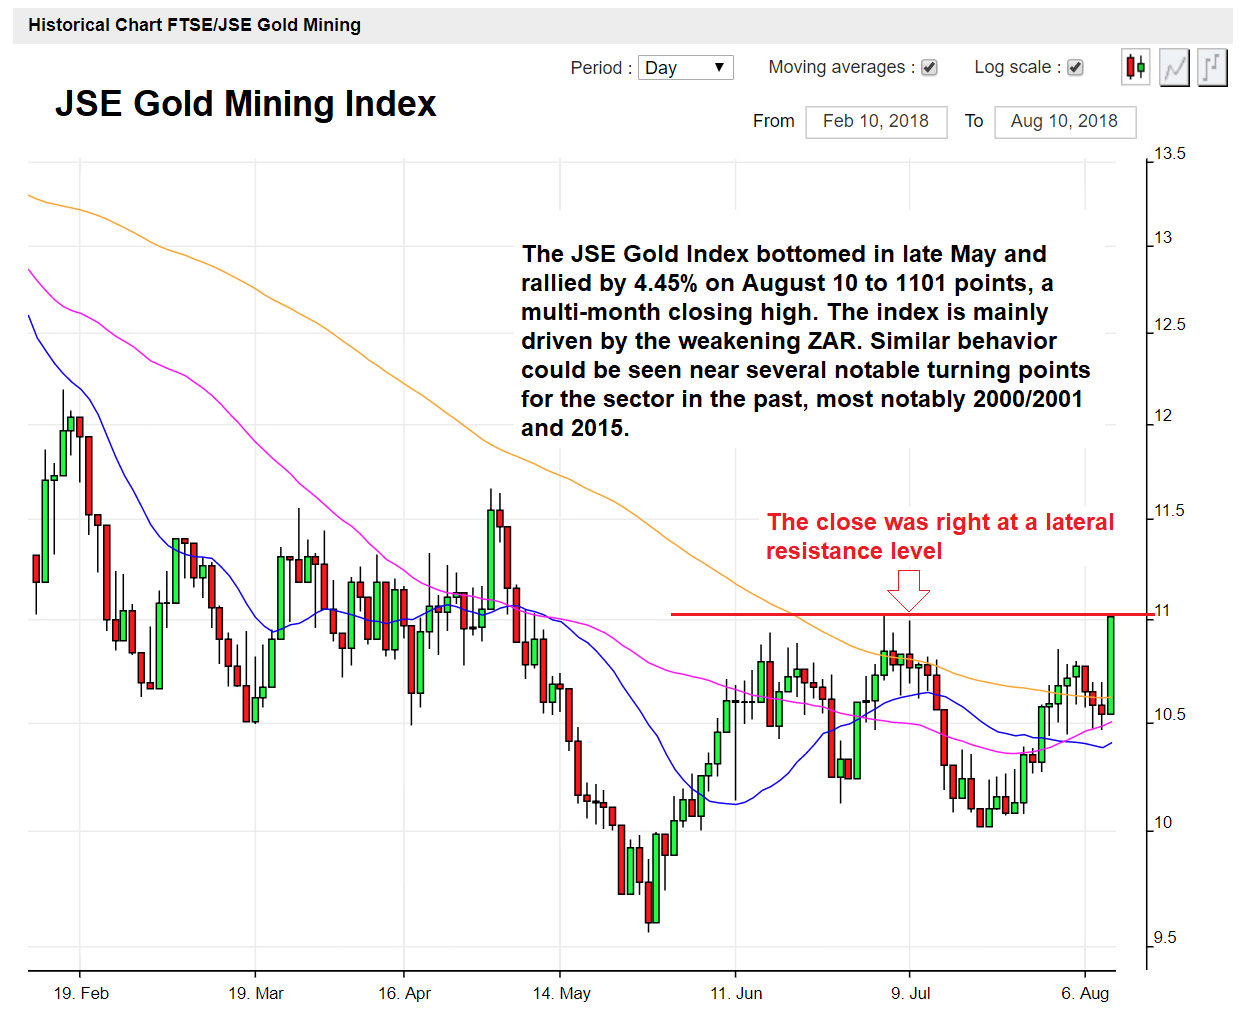 JSE Gold Mining Index